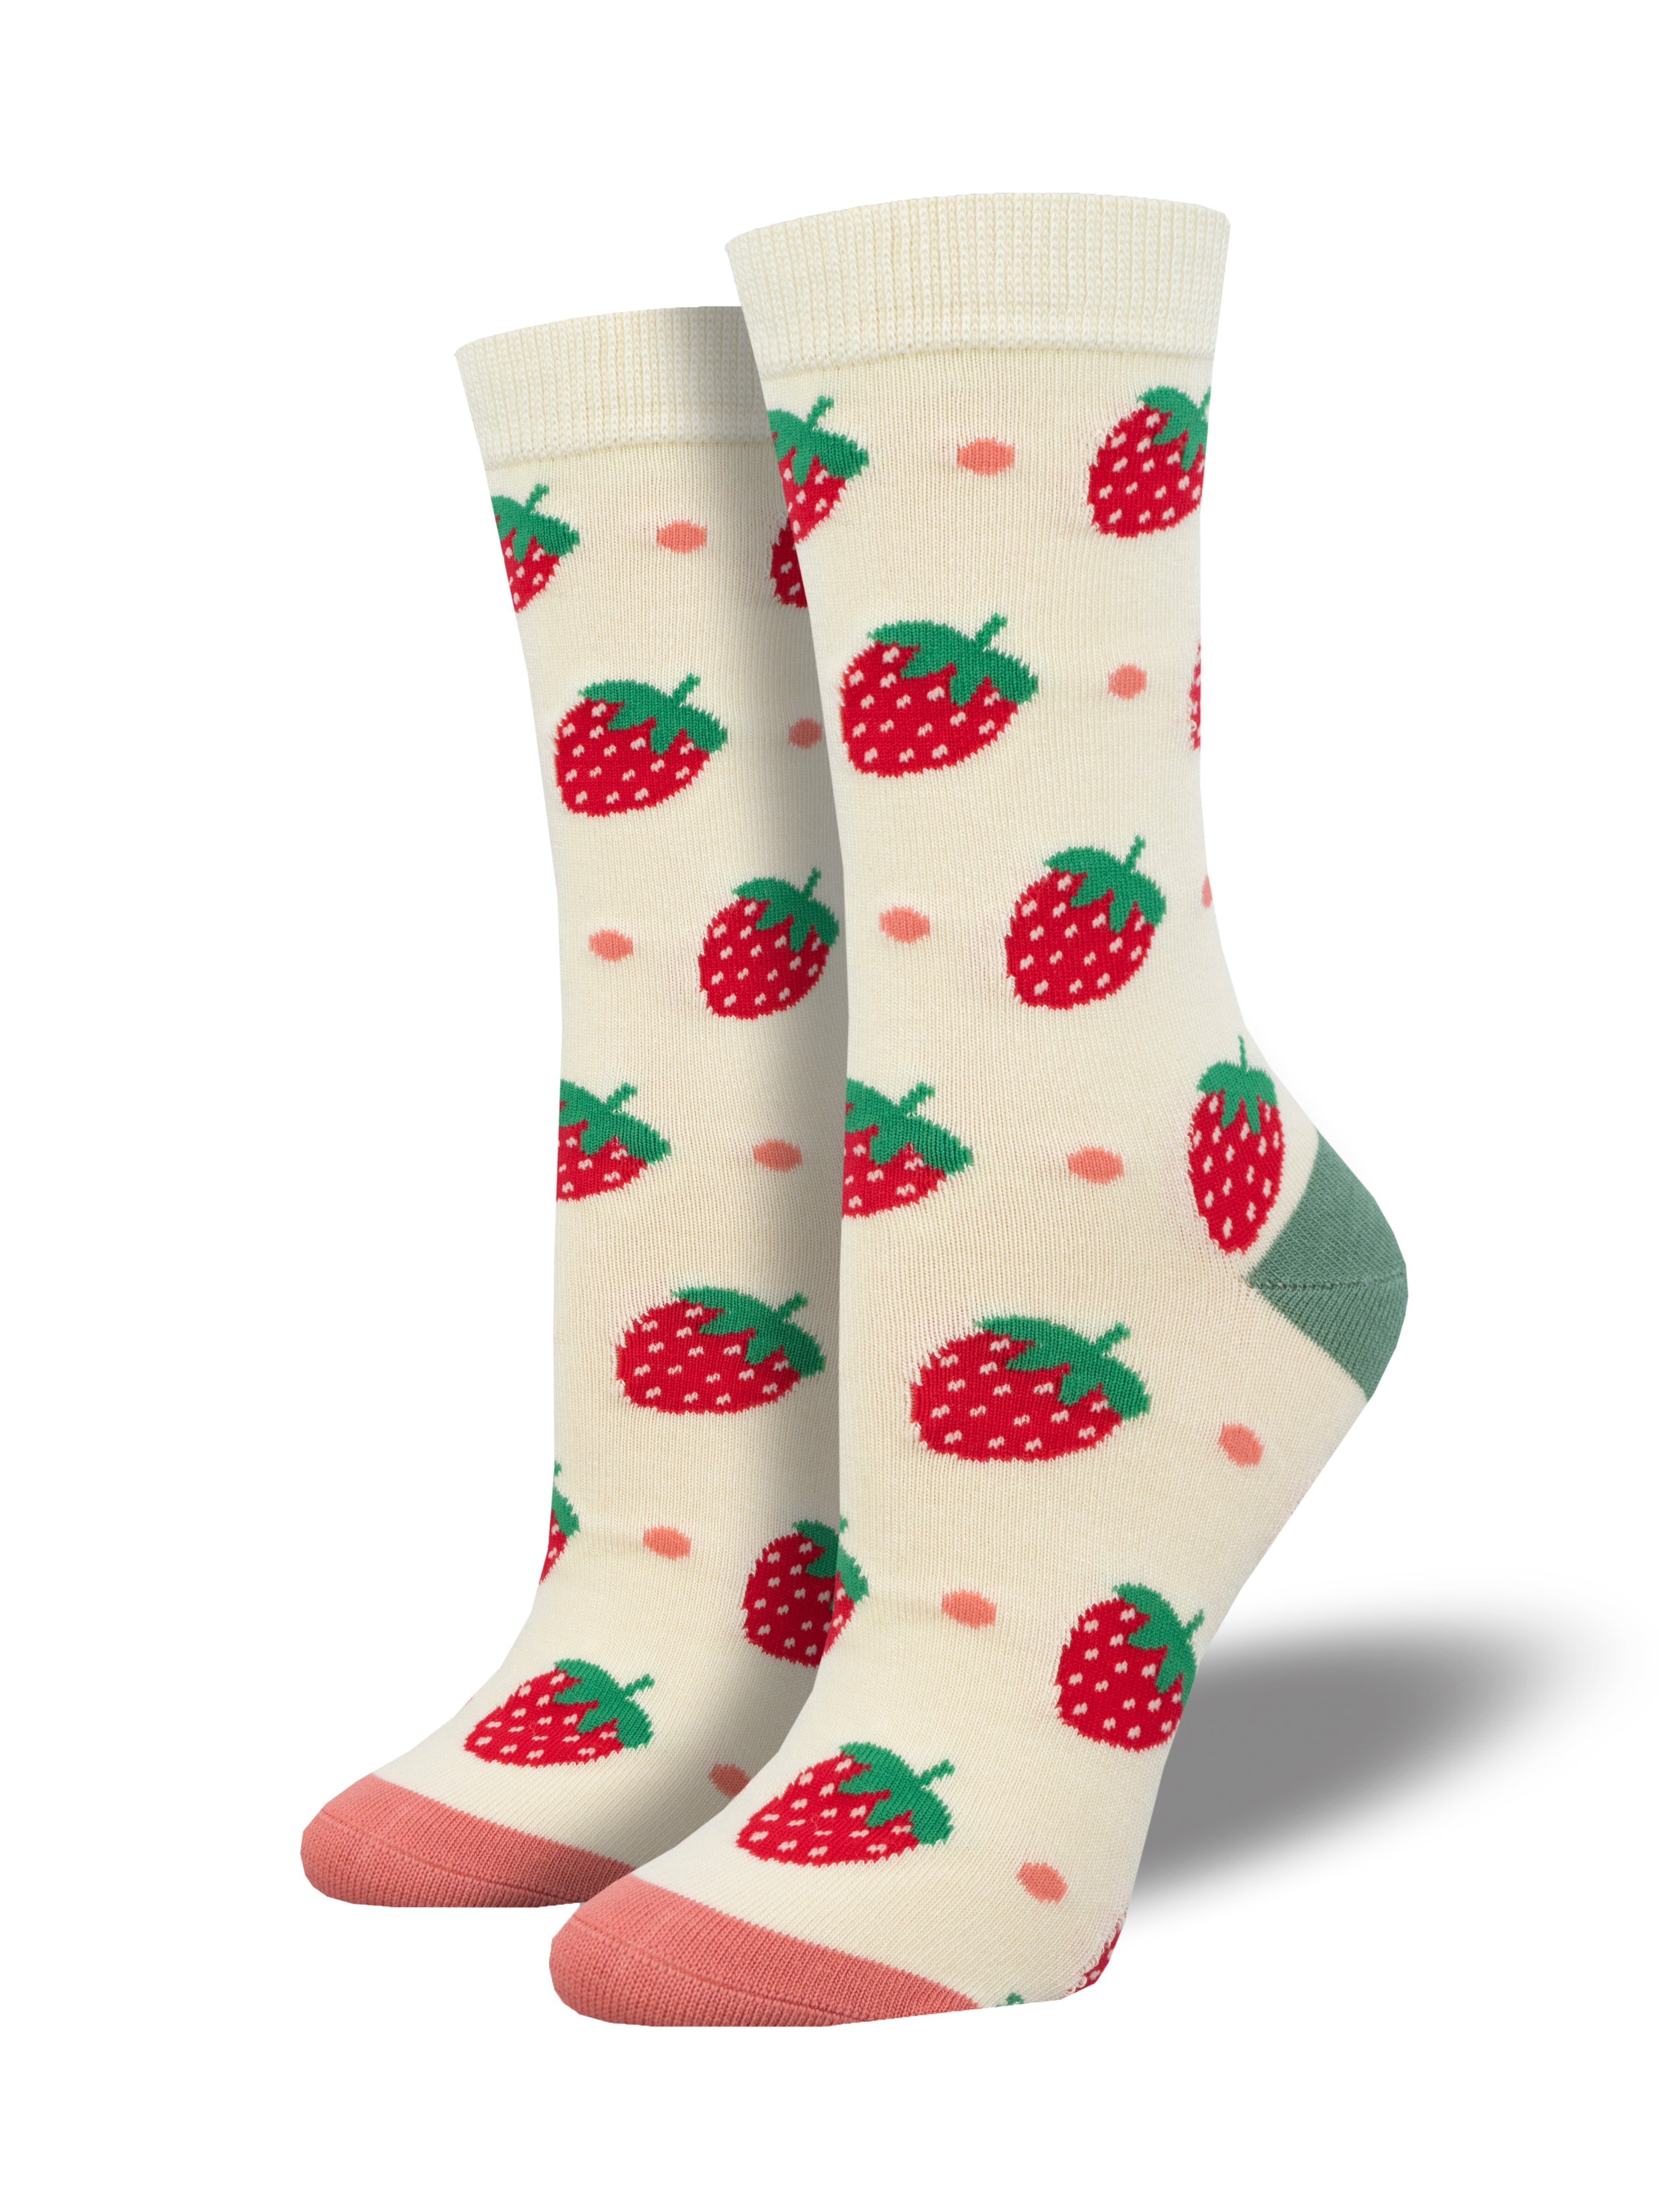 Women's Bamboo "Strawberry Delight" Socks